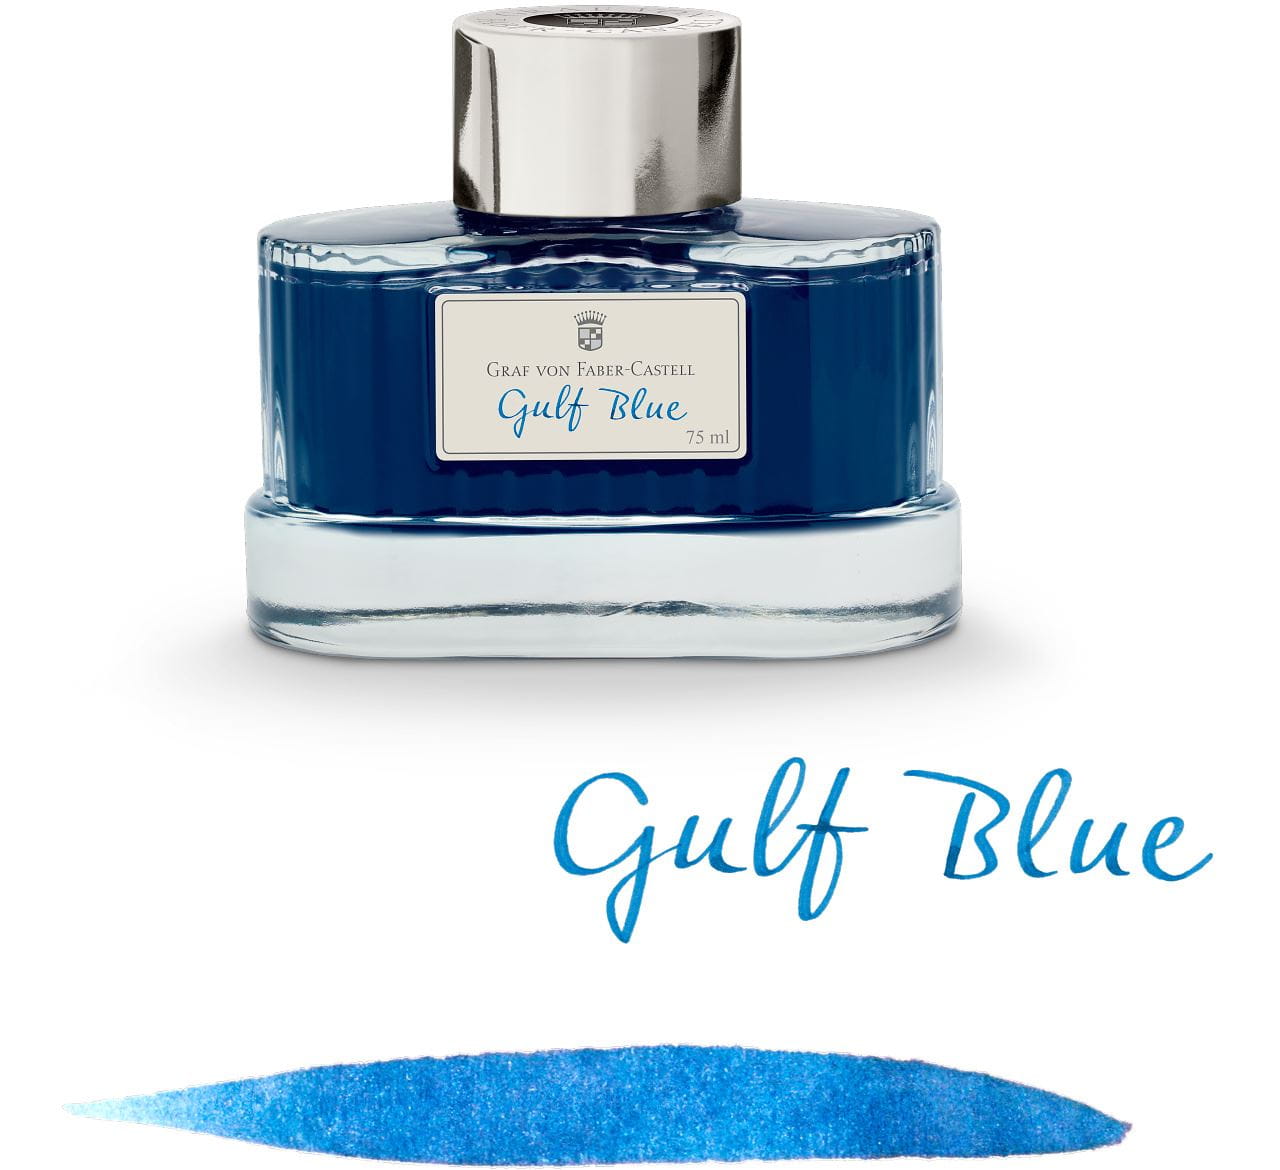 Graf-von-Faber-Castell - Frasco de Tinta na cor Azul Gulf, 75ml